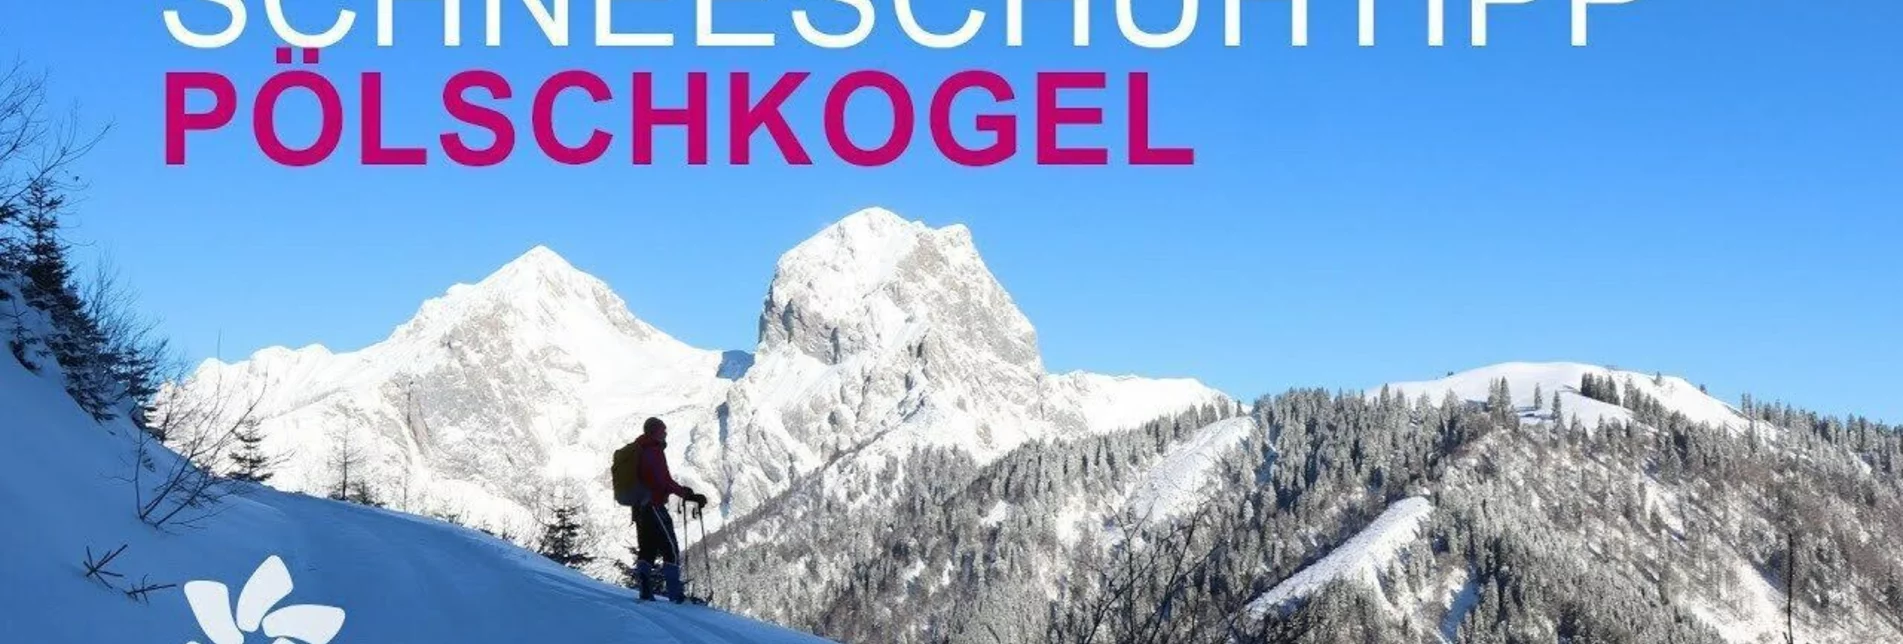 Snowshoe walking Plöschkogel - Touren-Impression #1 | © wegesaktiv